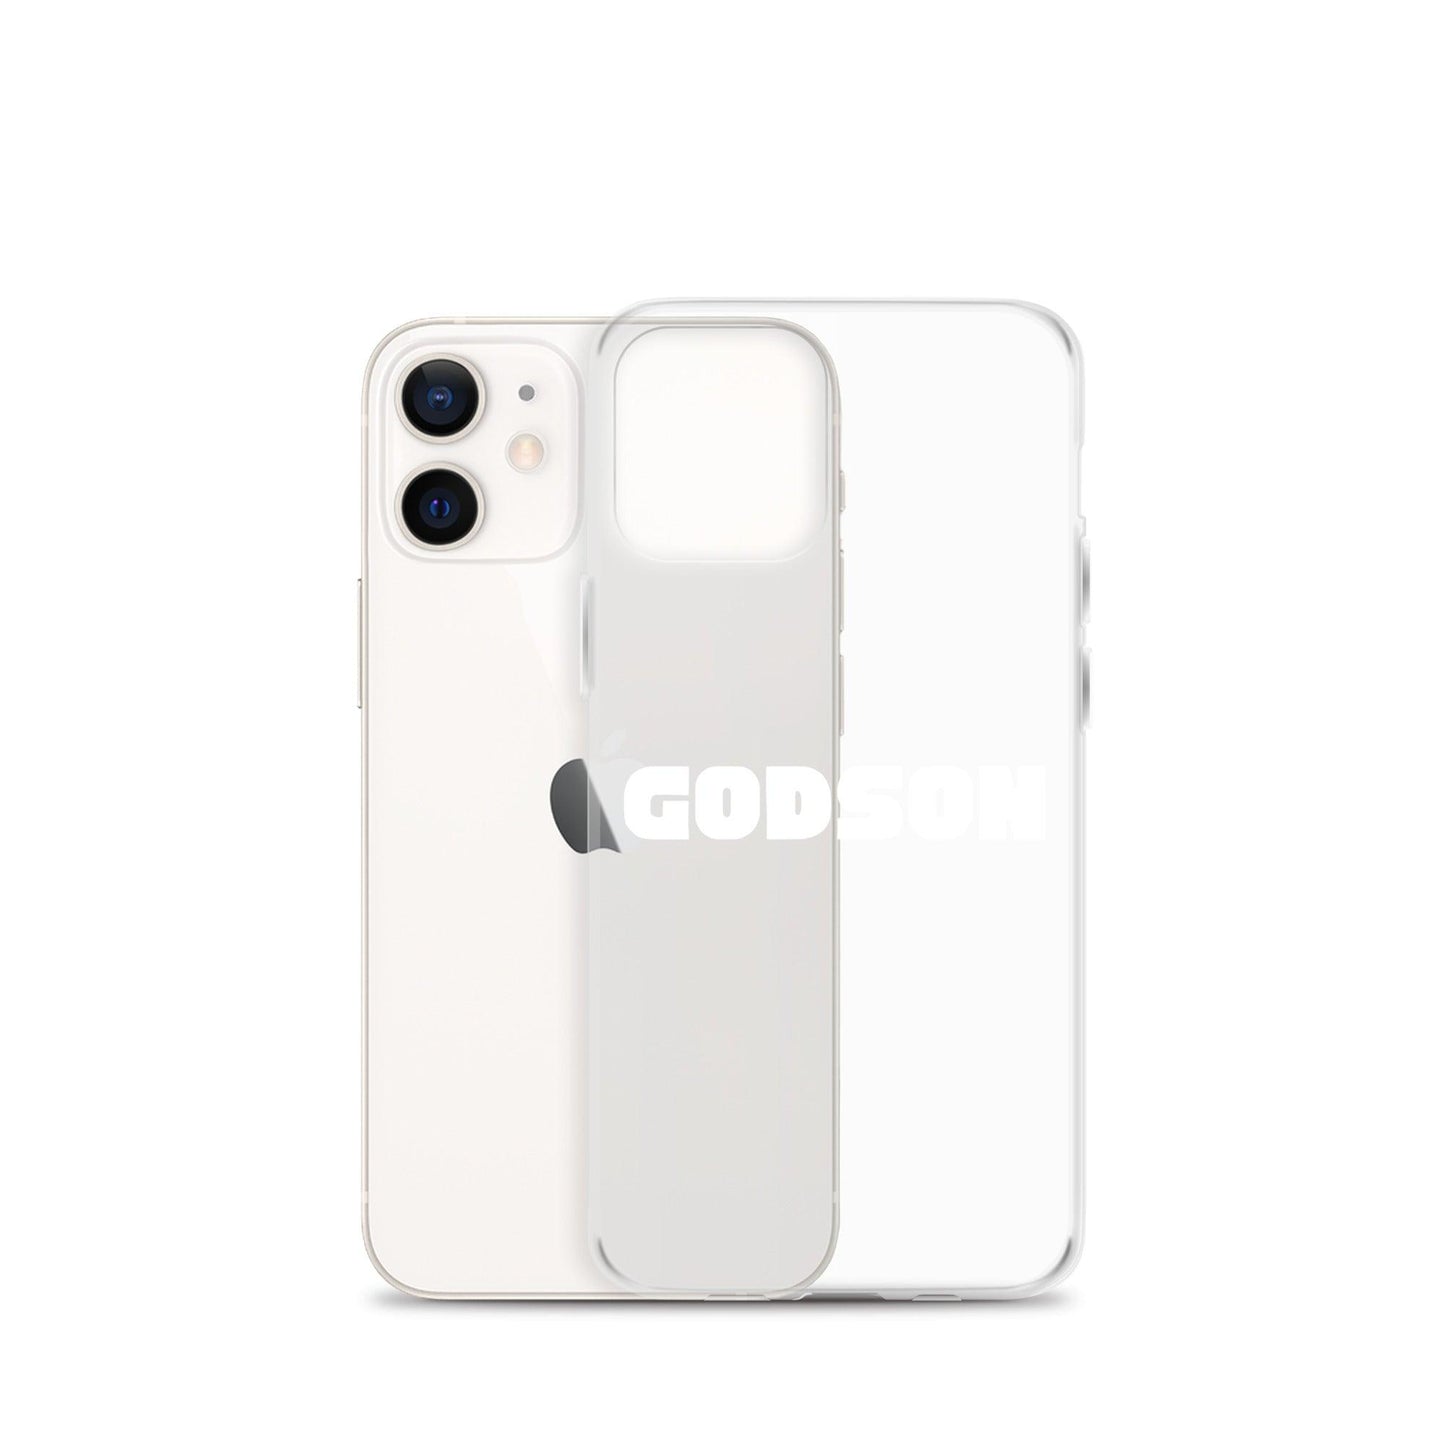 Brylan Lanier "GODSON" iPhone Case - Fan Arch